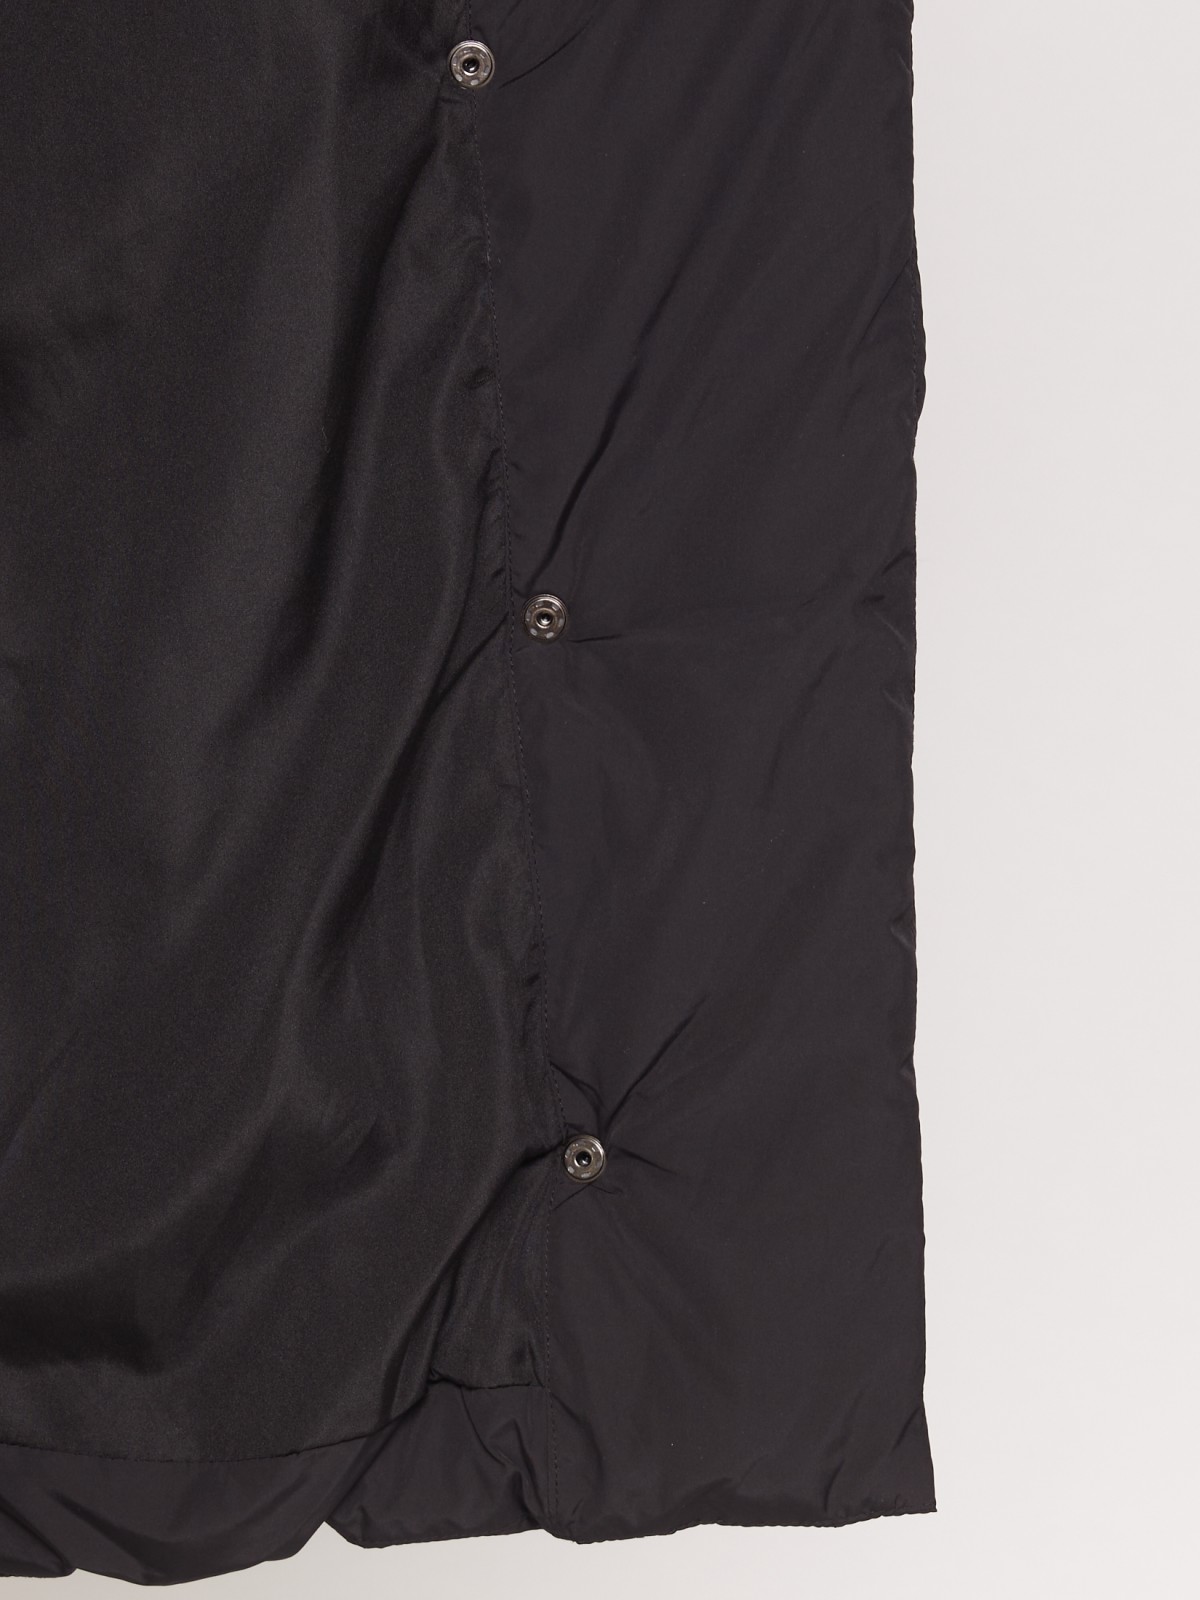 Утепленное пальто с шалевым воротником zolla 021335297044, цвет черный, размер XS - фото 3